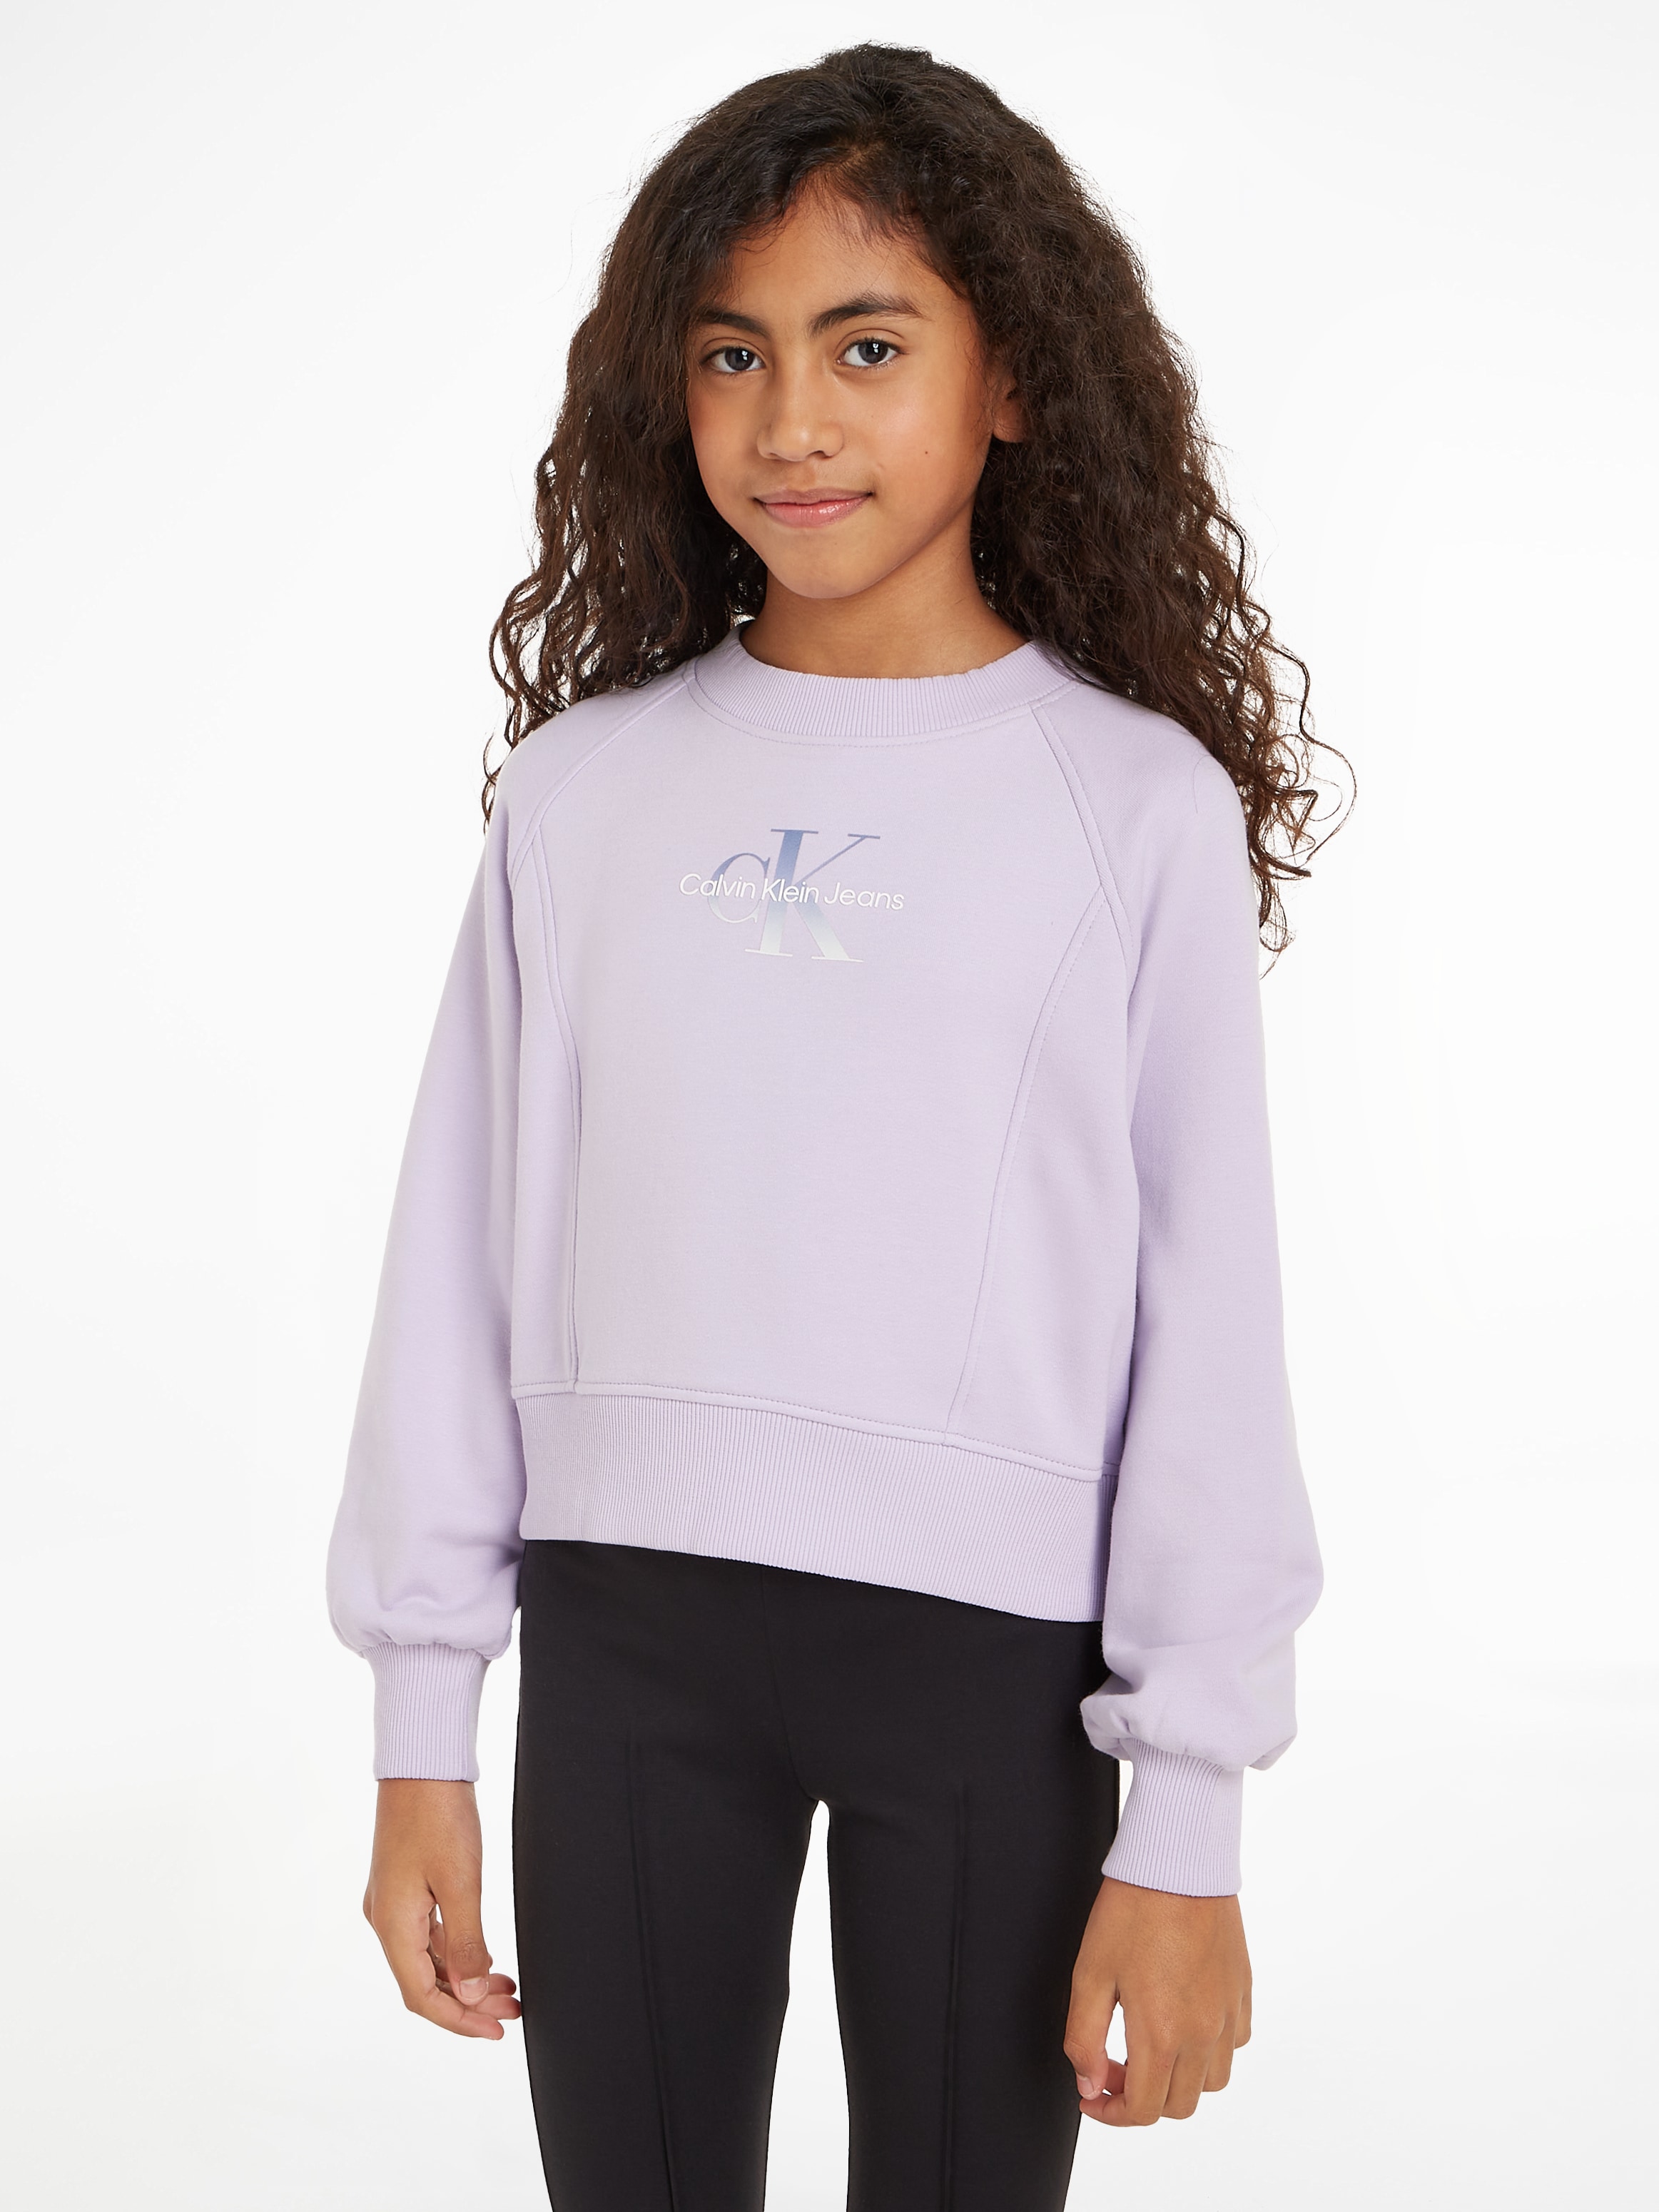 Calvin Klein Jeans Sweatshirt »GRADIENT MONOGRAM CN SWEATSHIRT«, für Kinder bis 16 Jahre